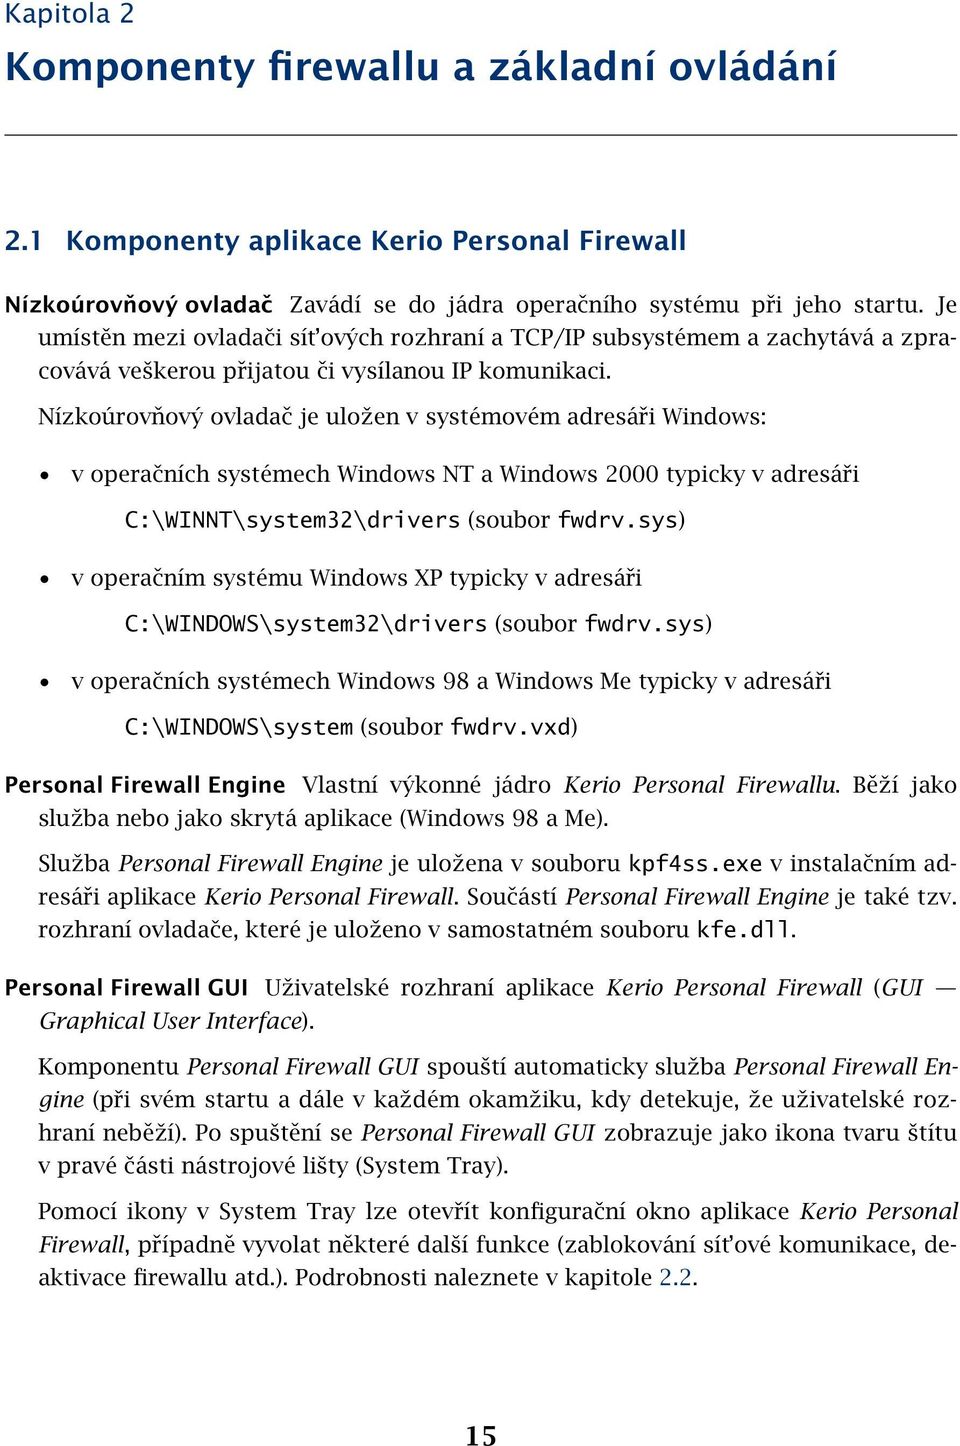 Nízkoúrovňový ovladač je uložen v systémovém adresáři Windows: v operačních systémech Windows NT a Windows 2000 typicky v adresáři C:\WINNT\system32\drivers (soubor fwdrv.